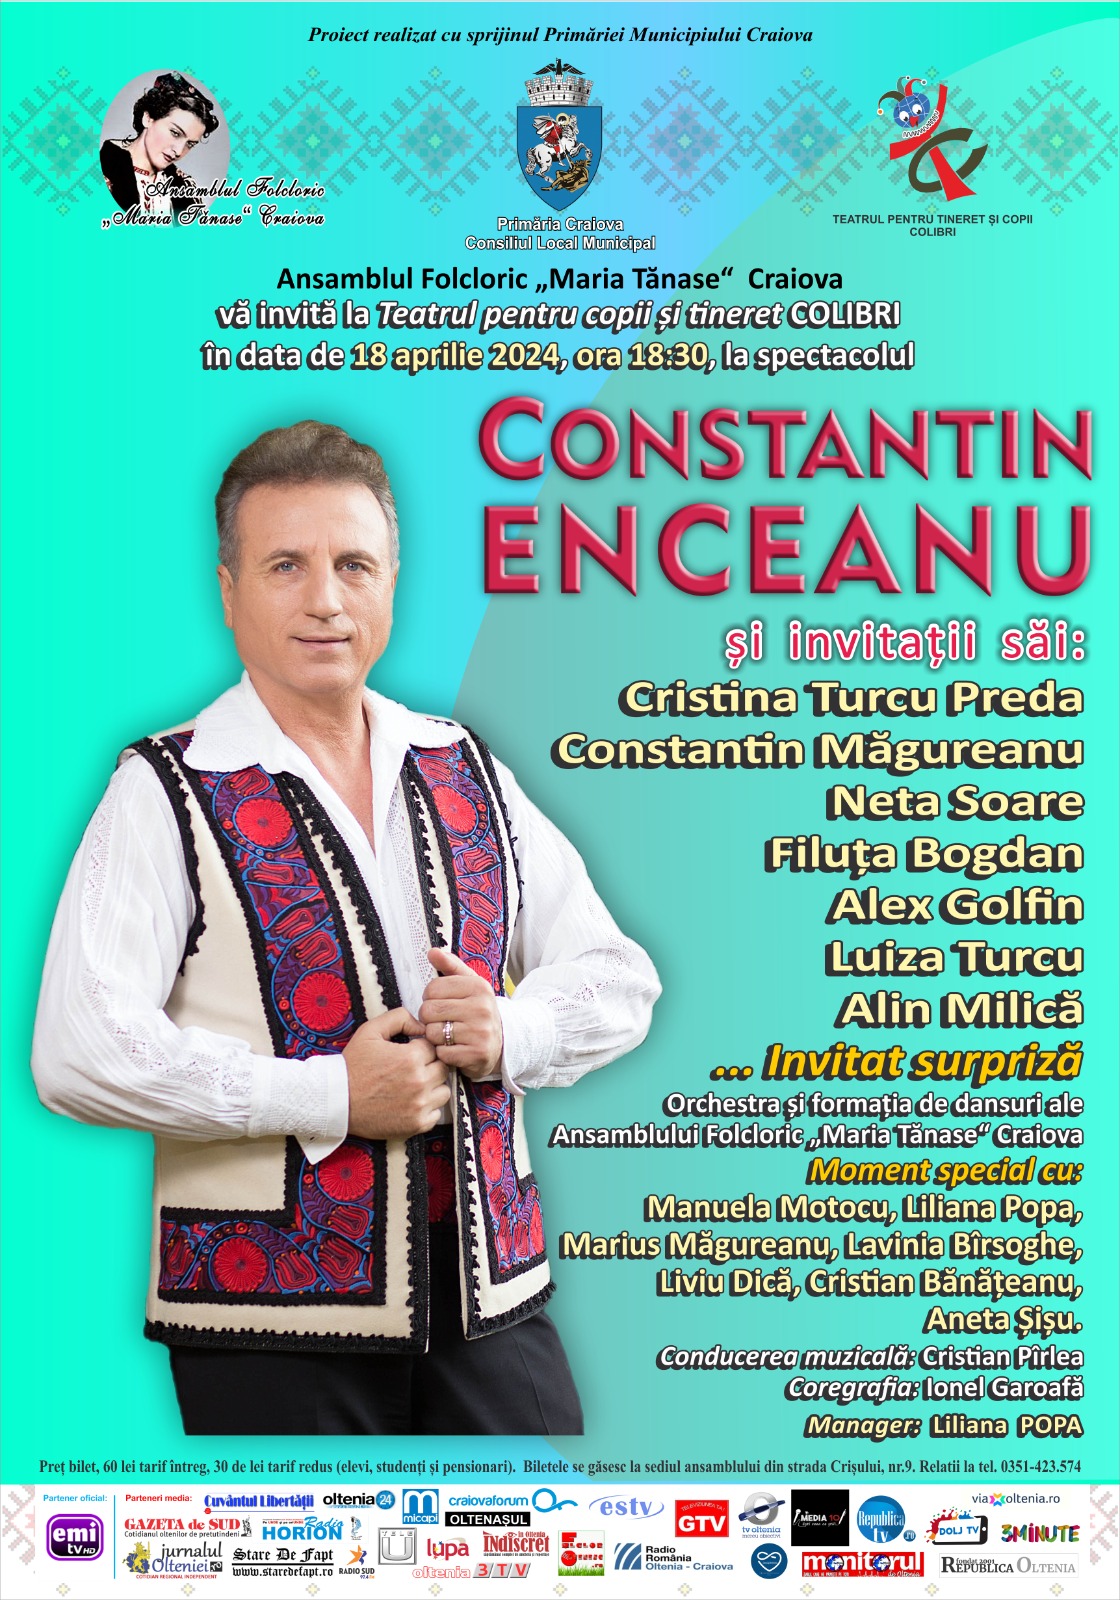 Constantin Enceanu și invitații săi